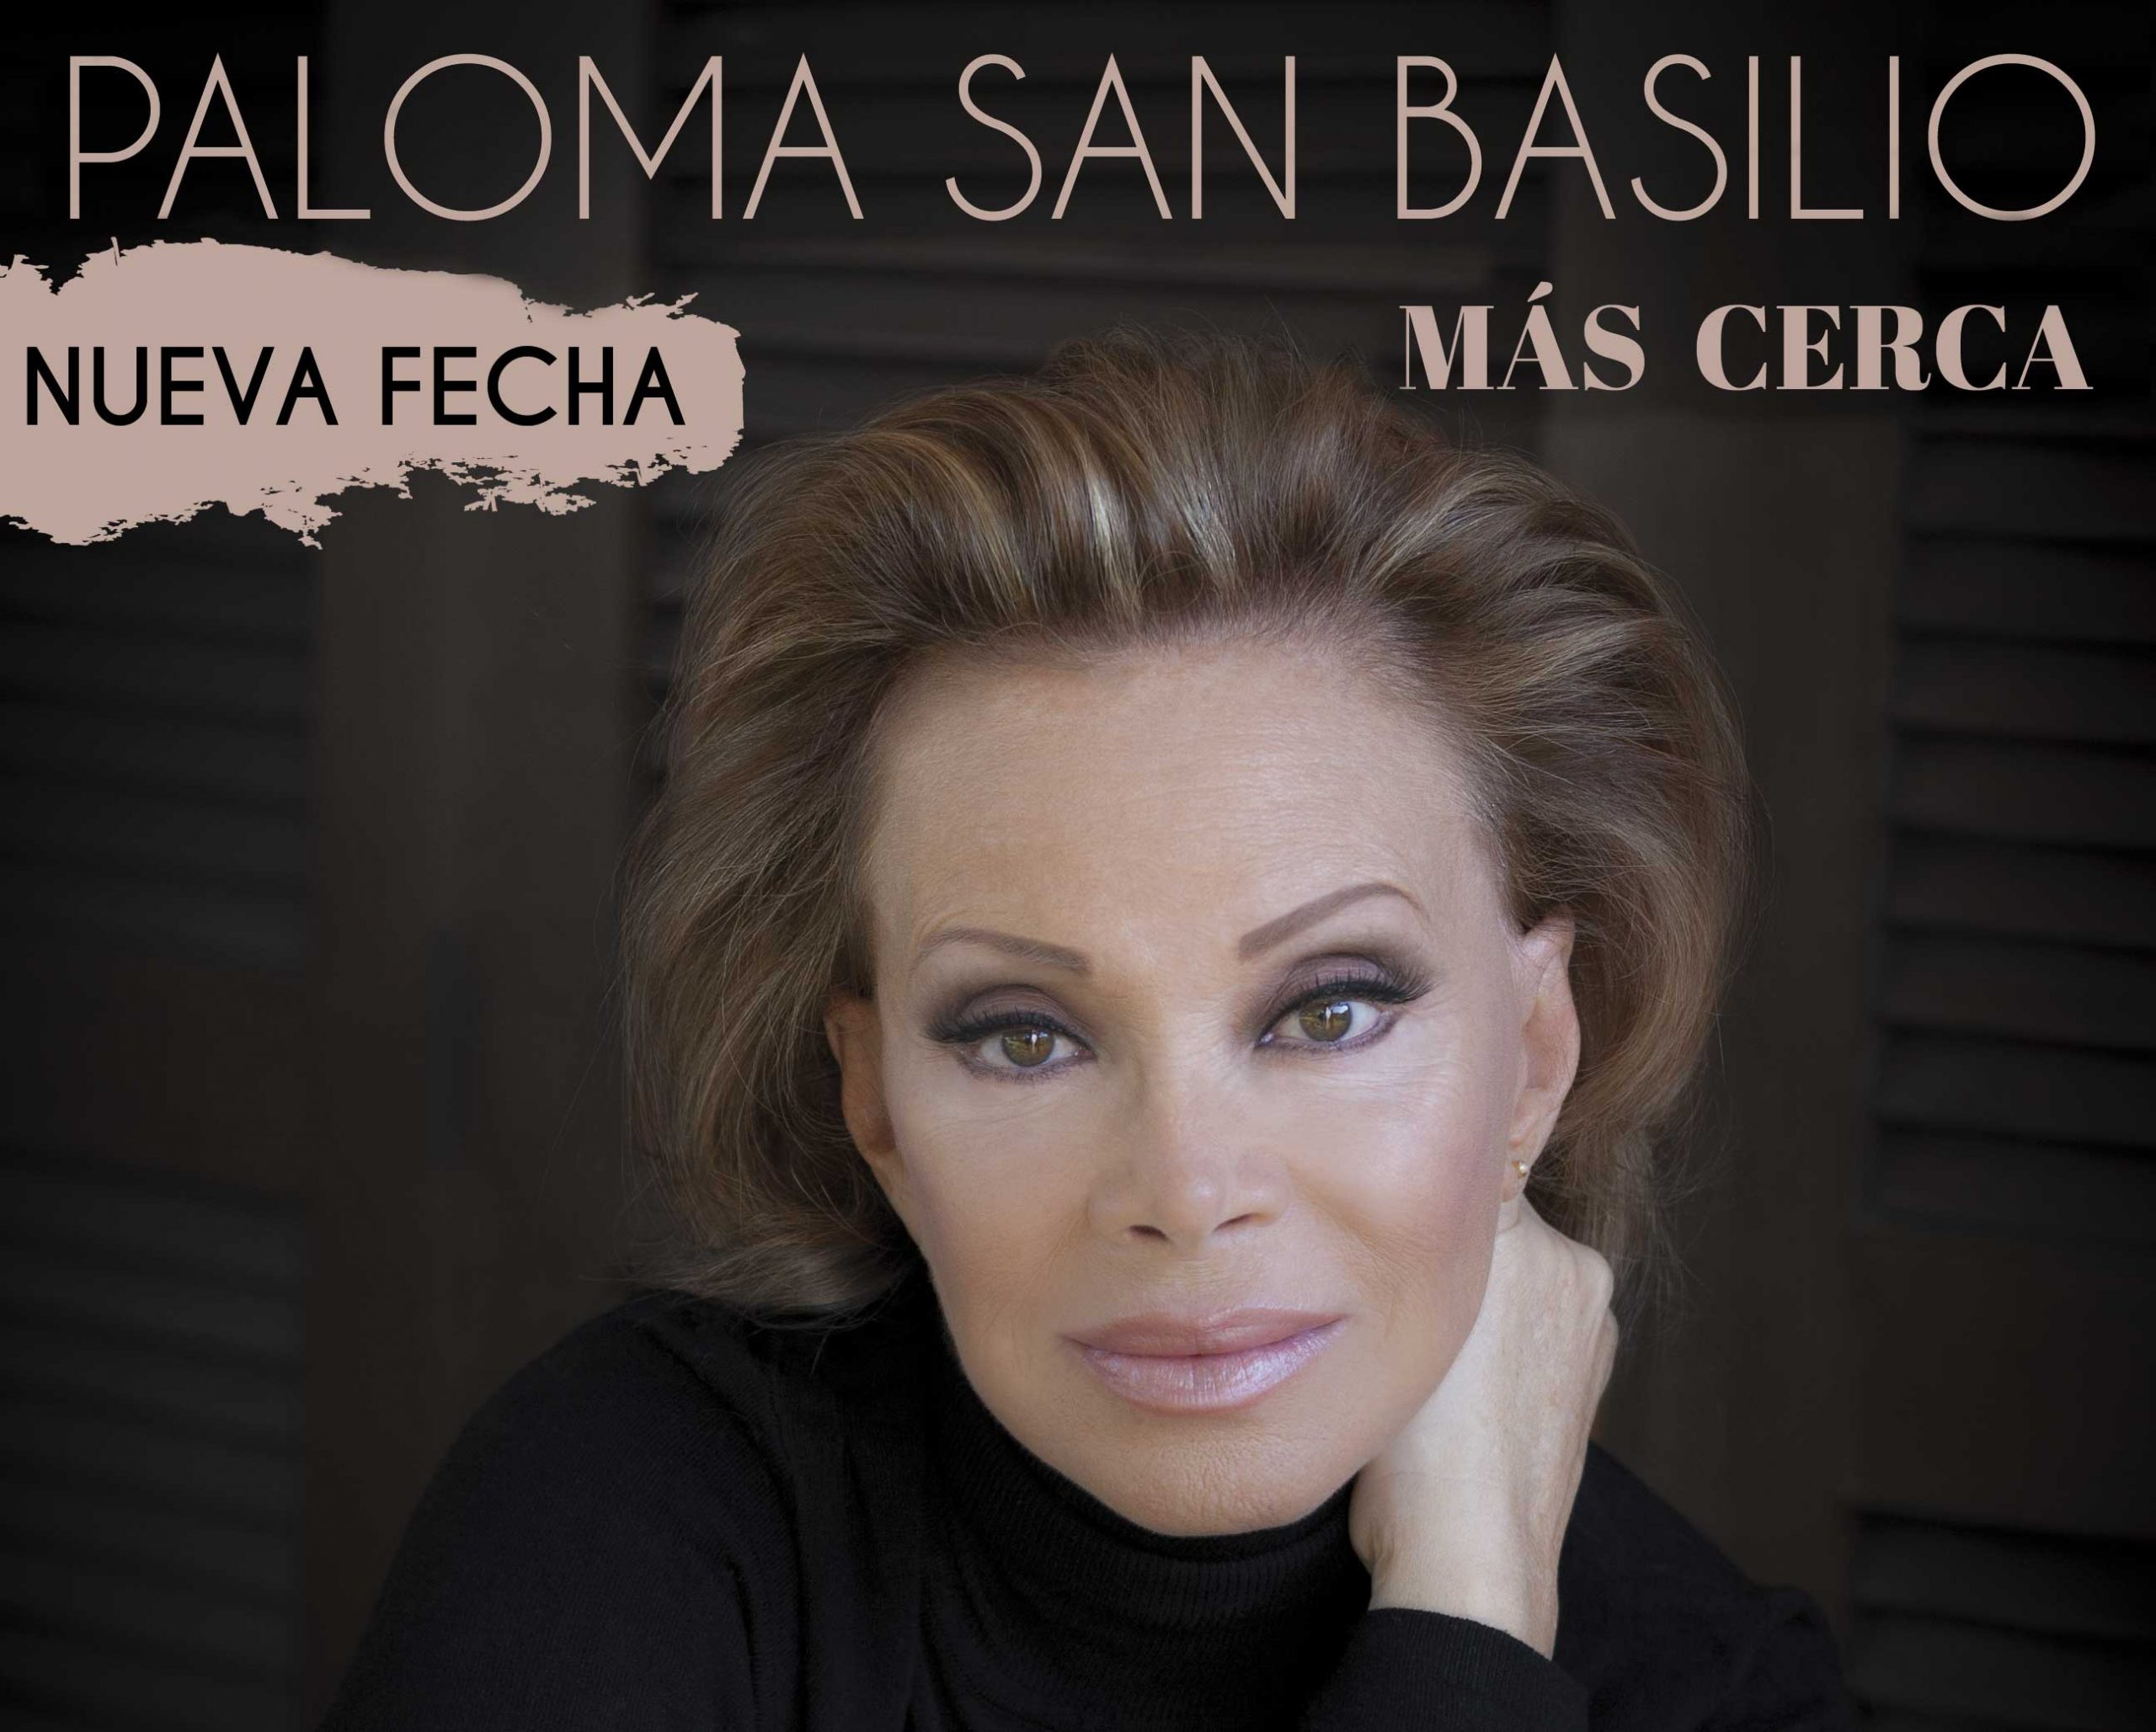 Paloma San Basilio pospone su concierto en Valencia